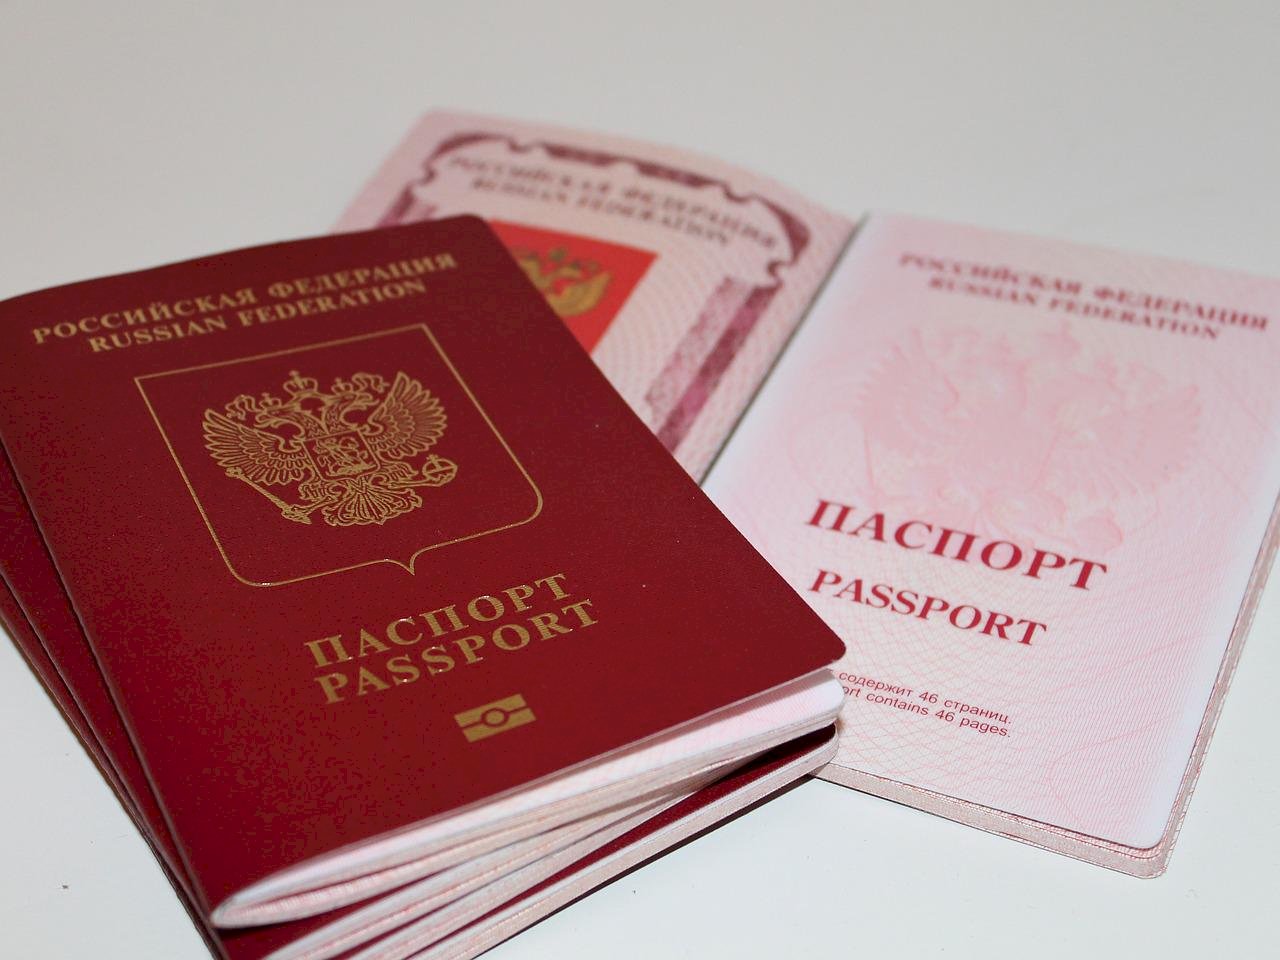 全面禁俄遊客困難 歐盟考慮中止簽證便利化協議